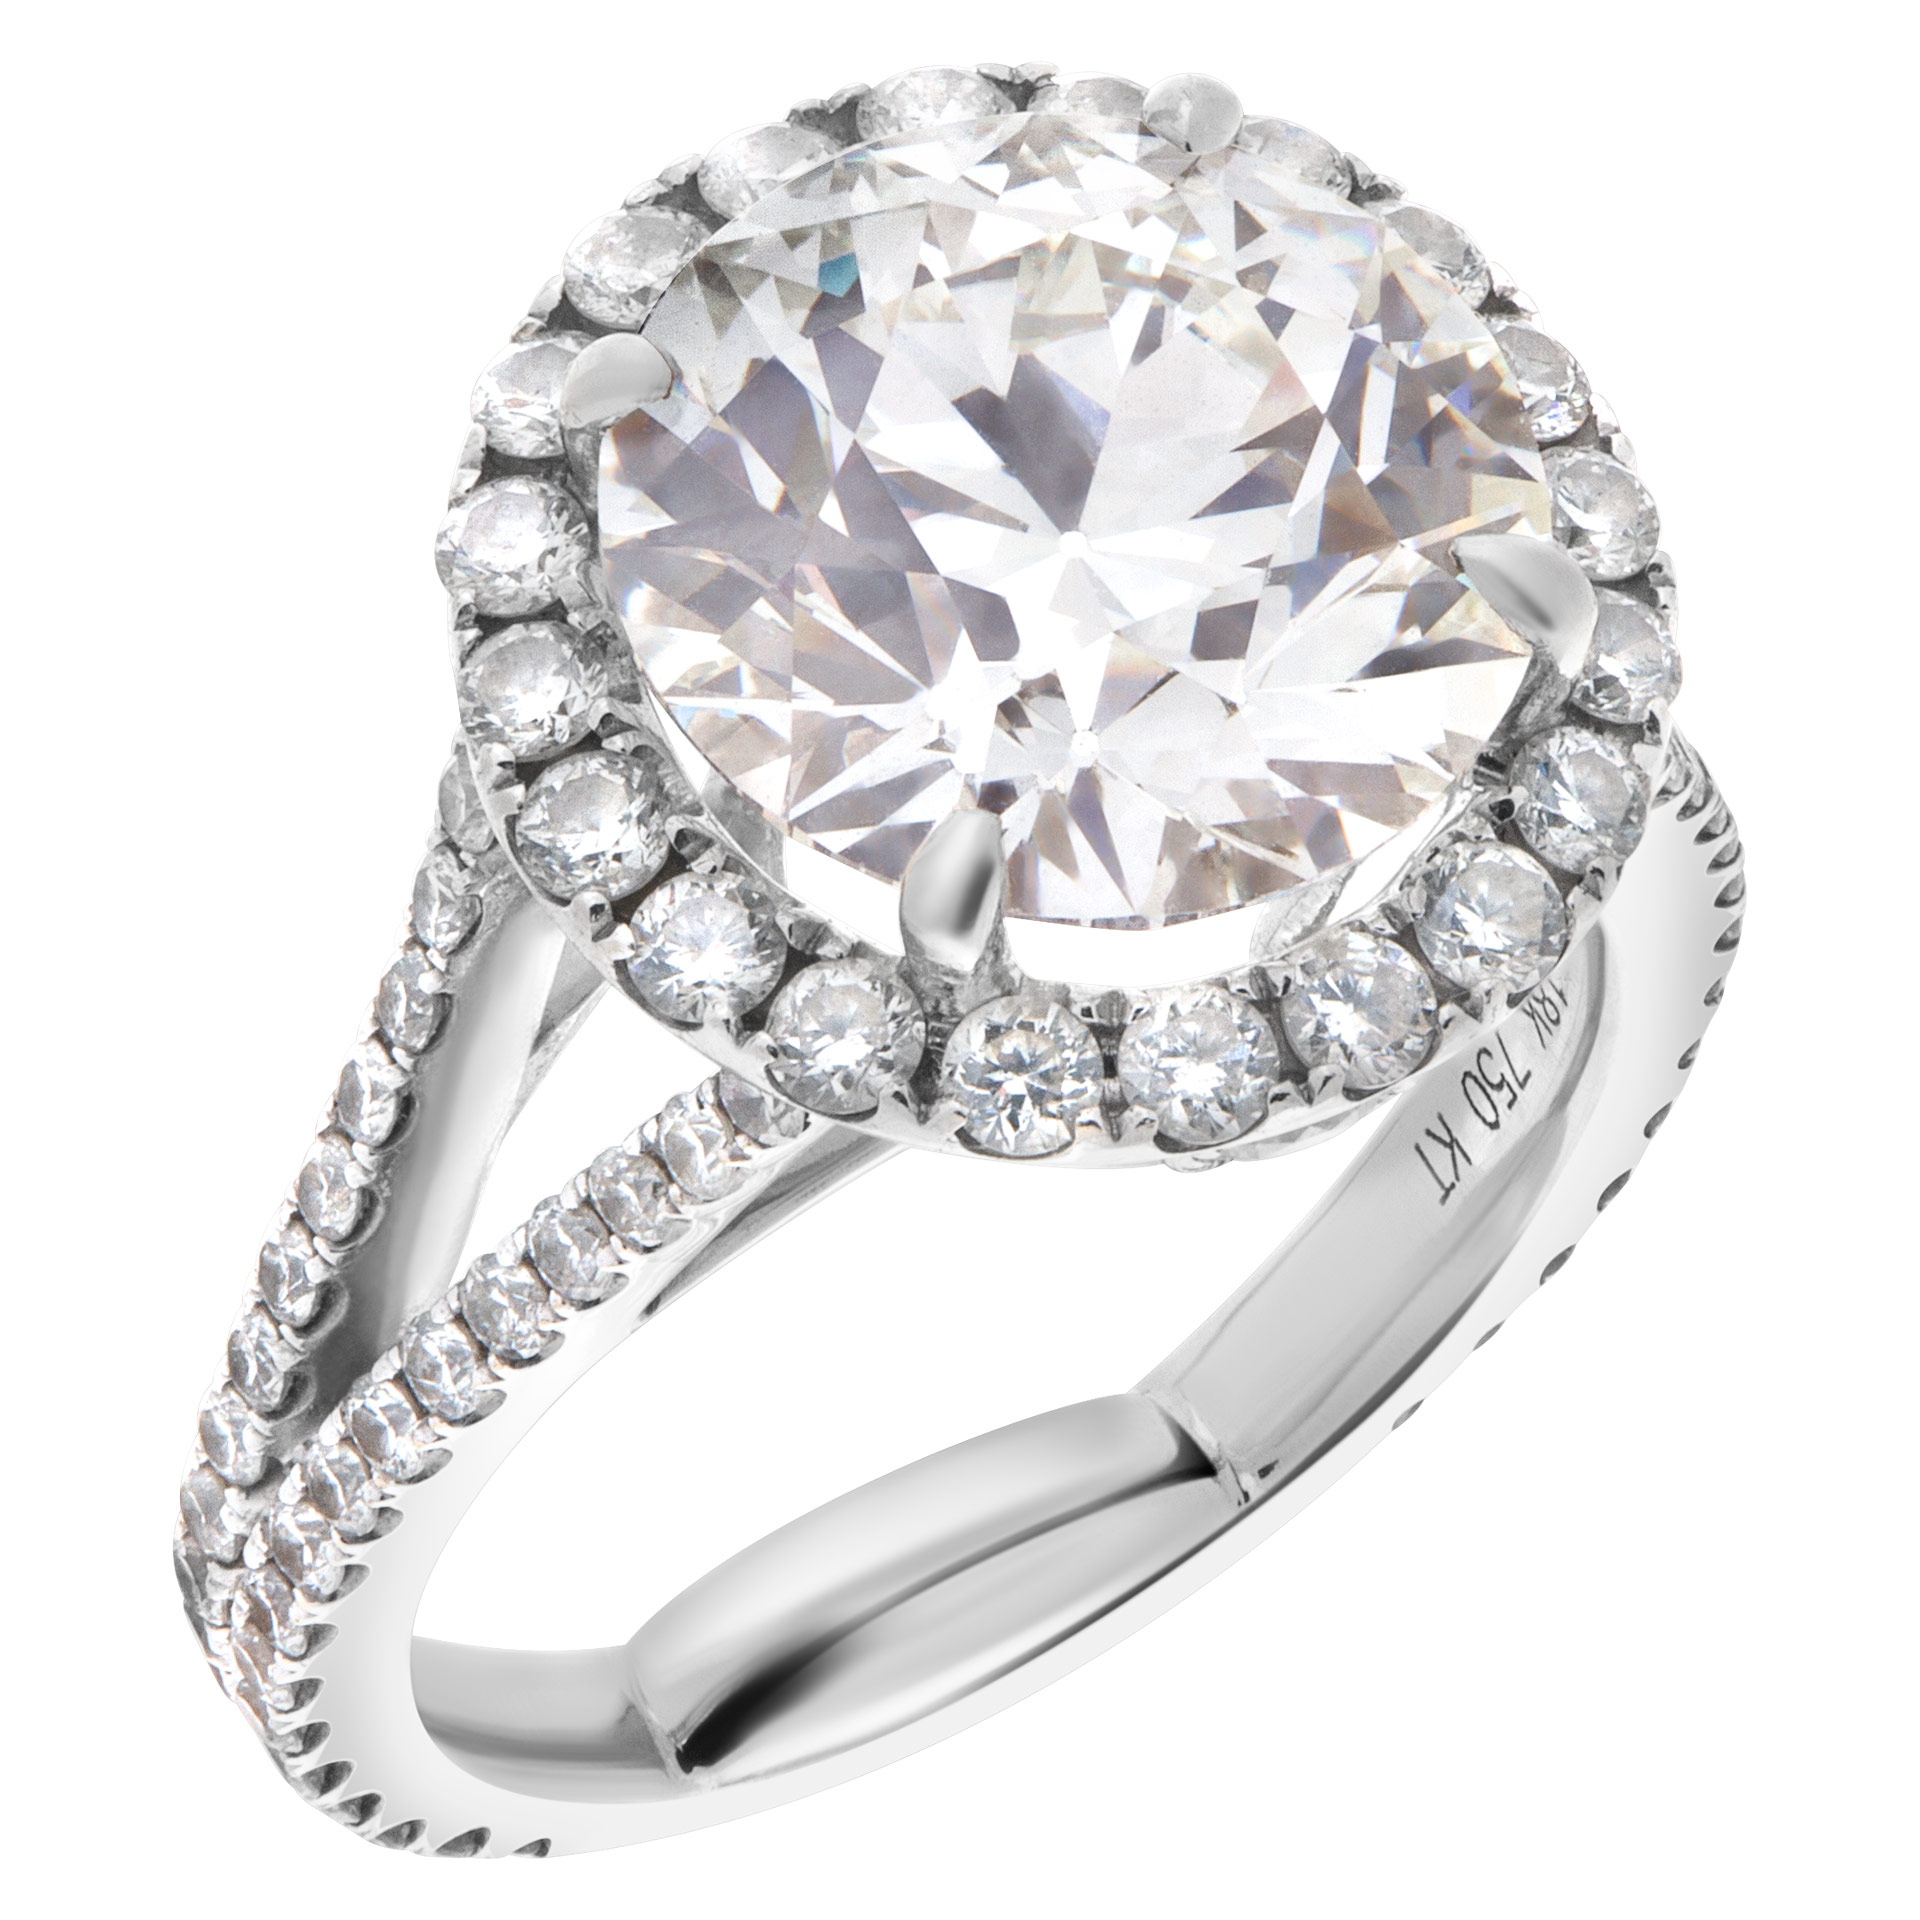 GIA certified diamond ring 4.39 carat (K color, VVS2